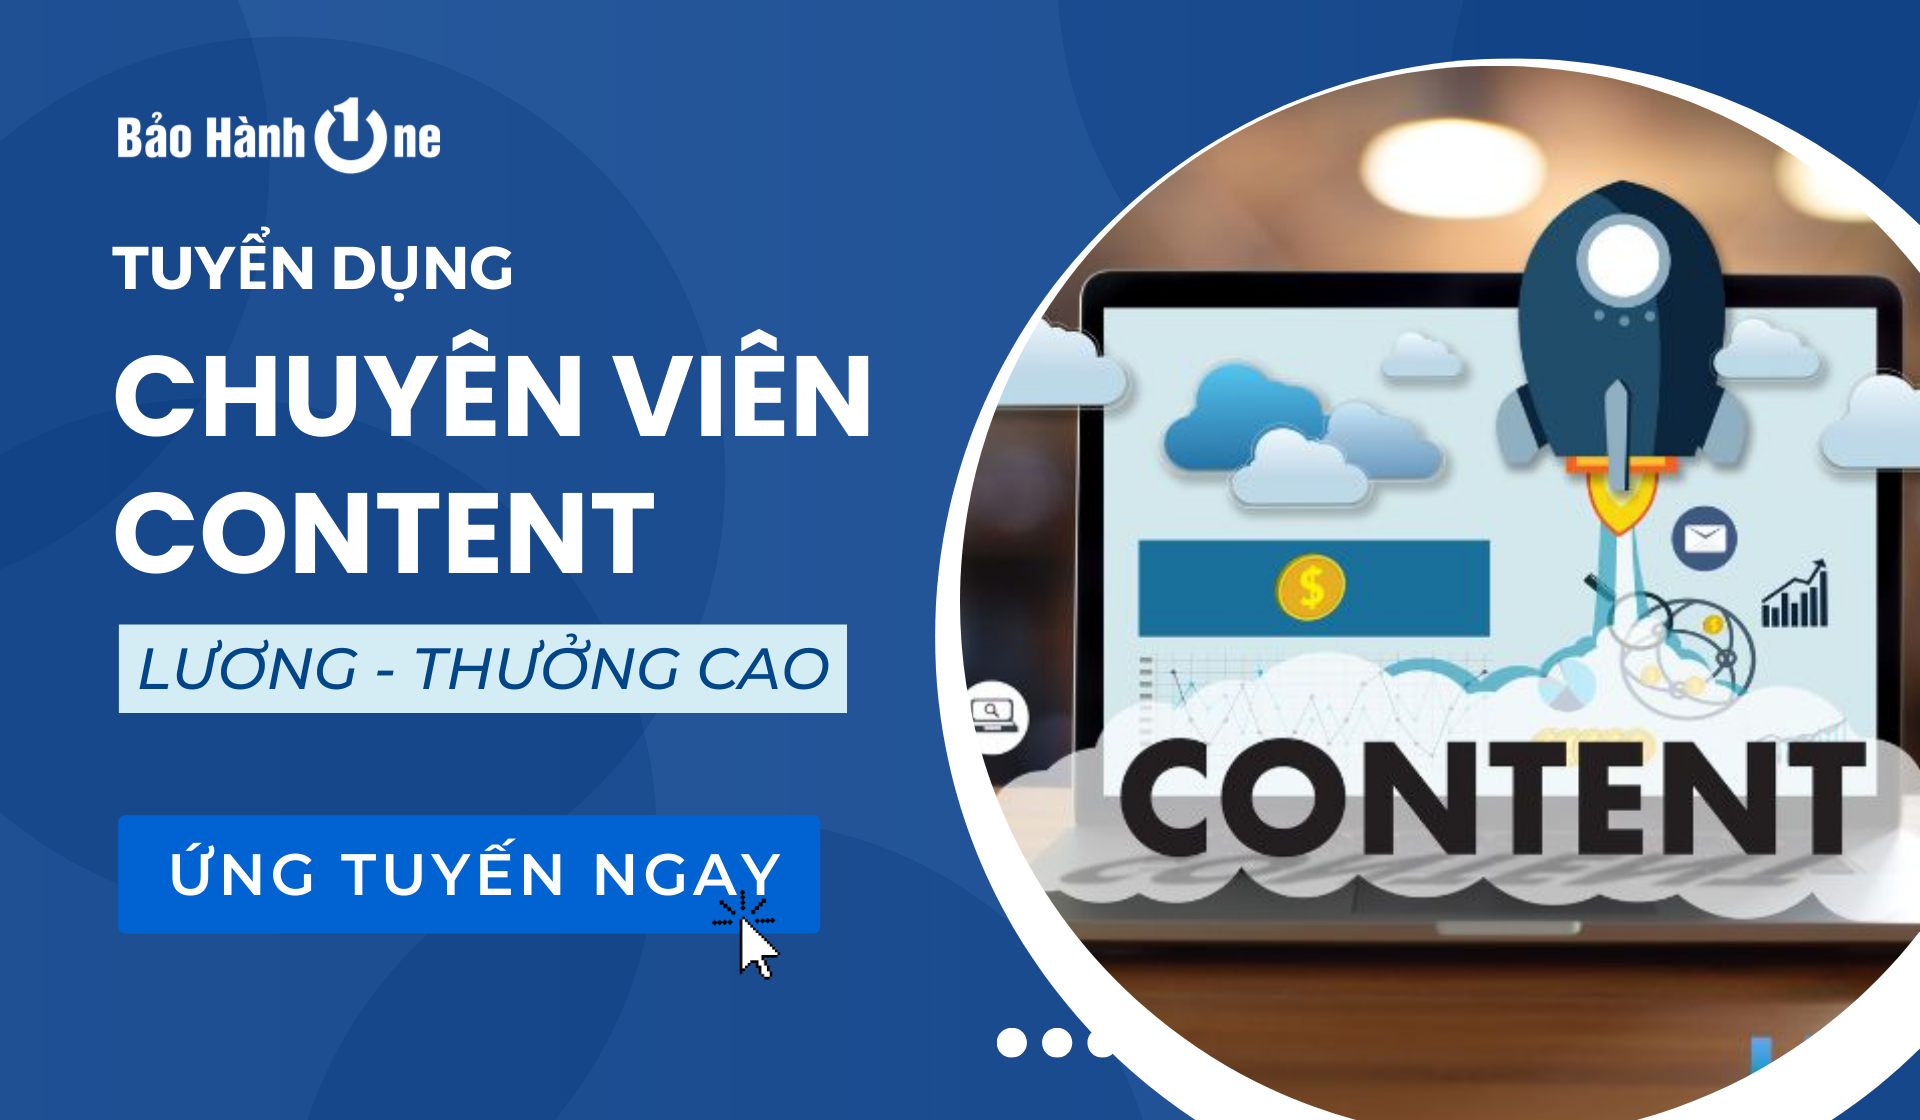 Tuyển dụng Chuyên Viên Content tại Quận 1, 10, Tân Phú (Bảo Hành One)